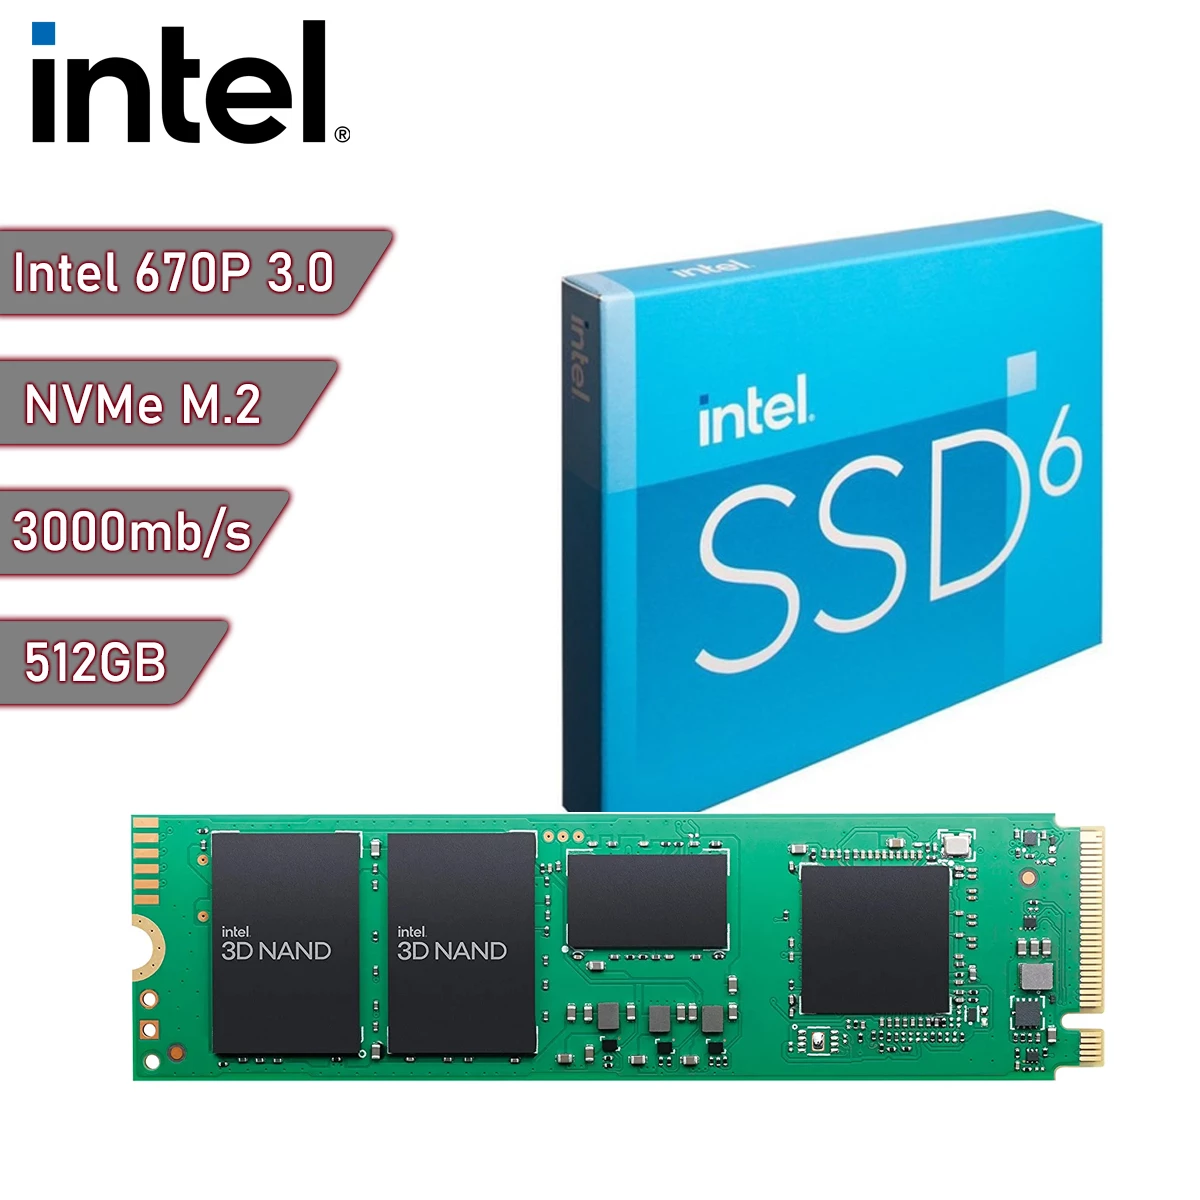 Automáticamente Nuez Seleccione Disco sólido SSD M.2 NVMe Intel 670P 512Gb Gen3x4 | Quito Ecuador